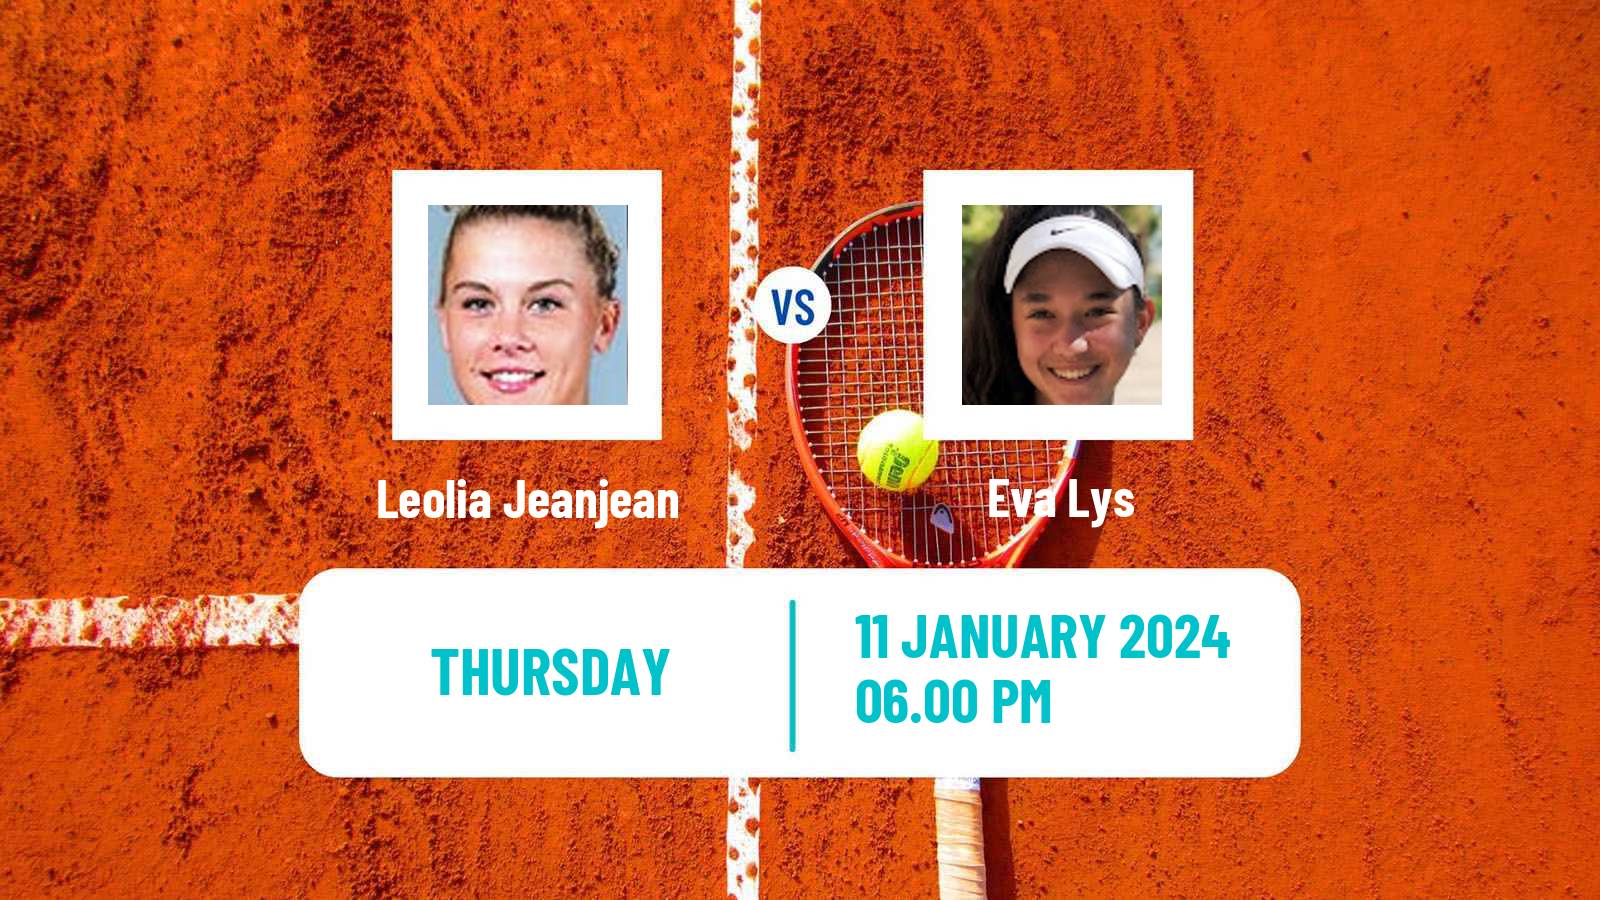 Tennis WTA Australian Open Leolia Jeanjean - Eva Lys